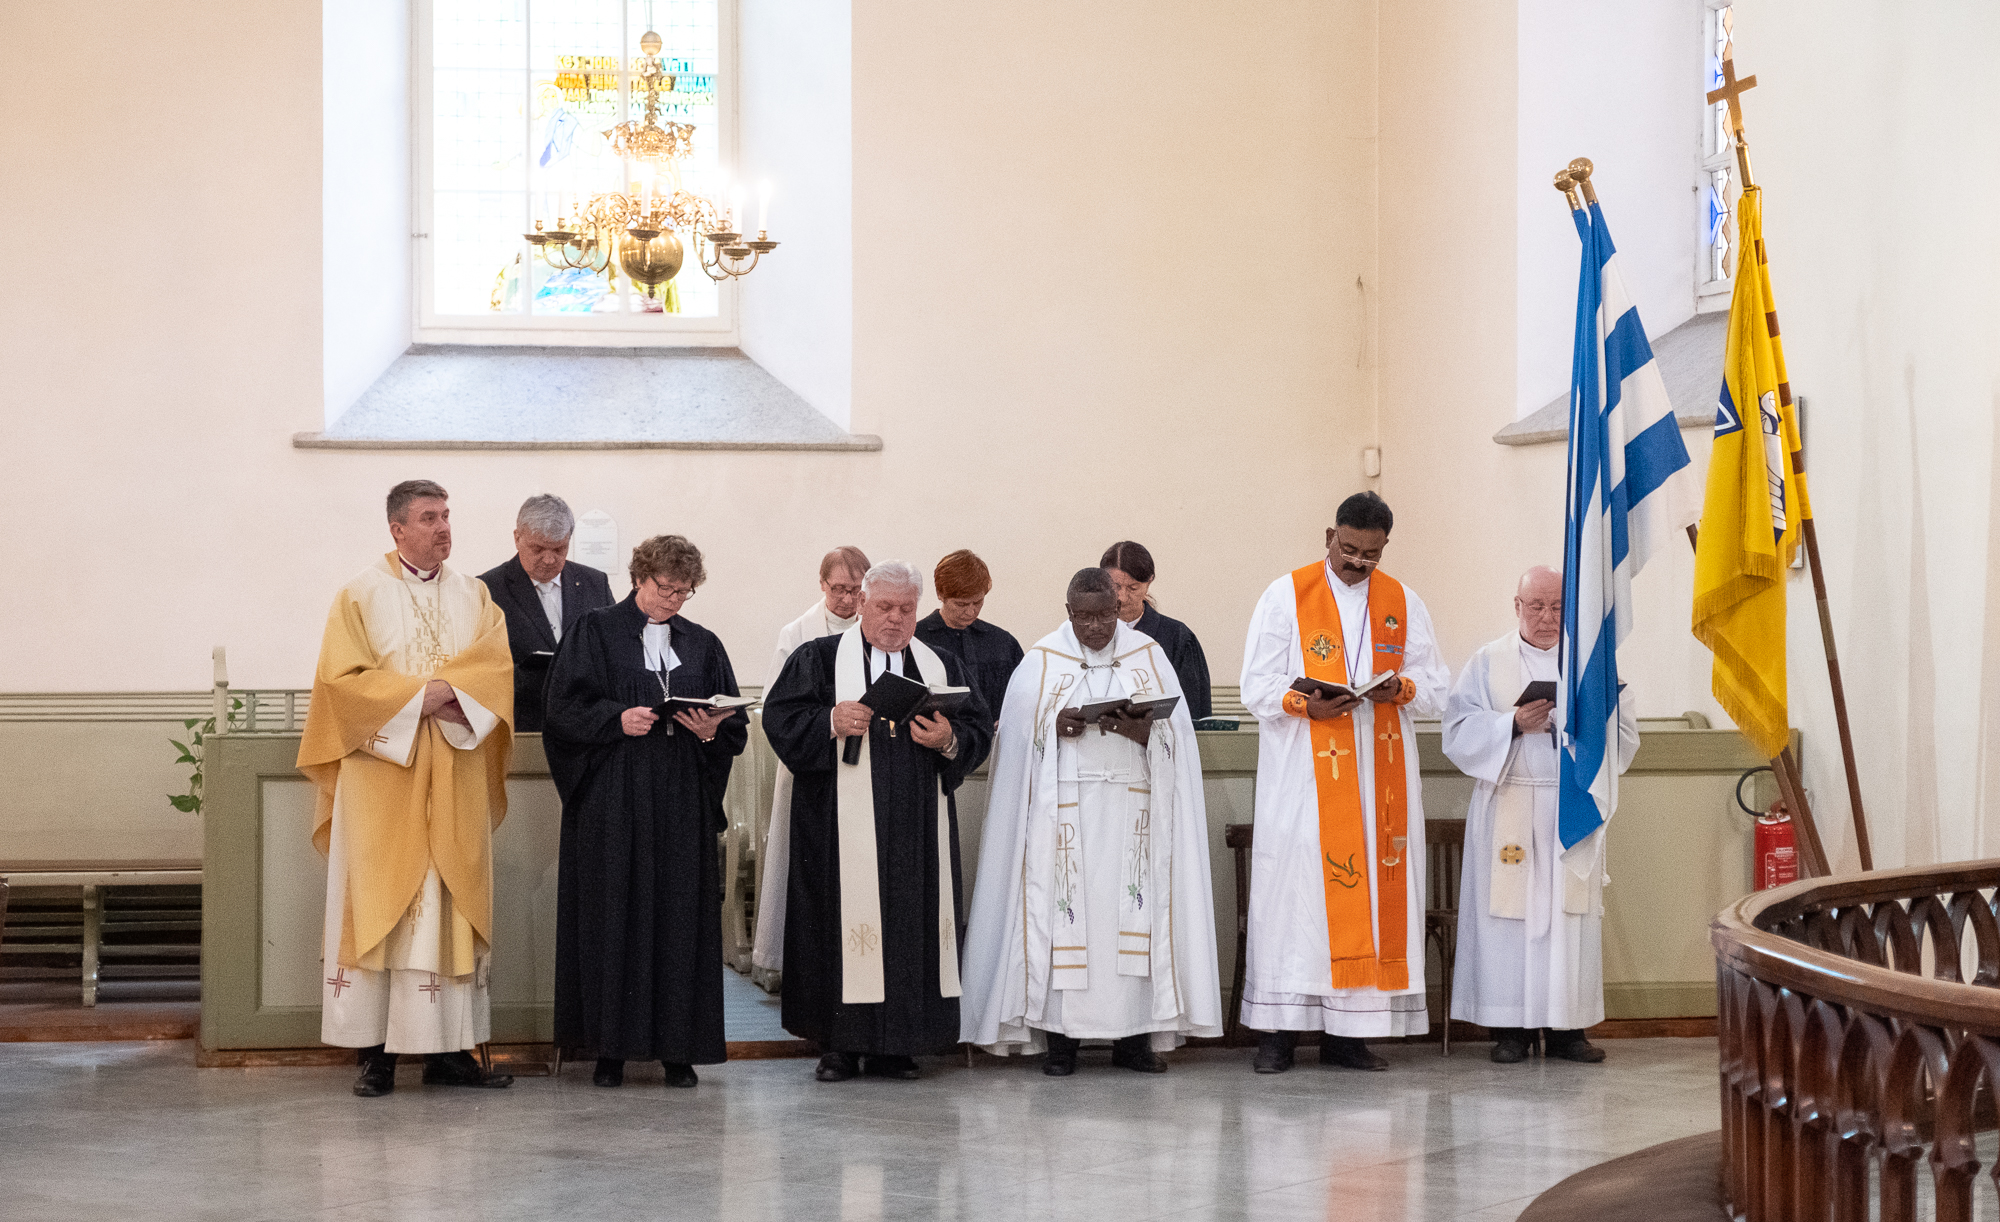 Pühapäevasel jumalateenistusel Tallinna Jaani kirikus osales vaimulikke üle maailma